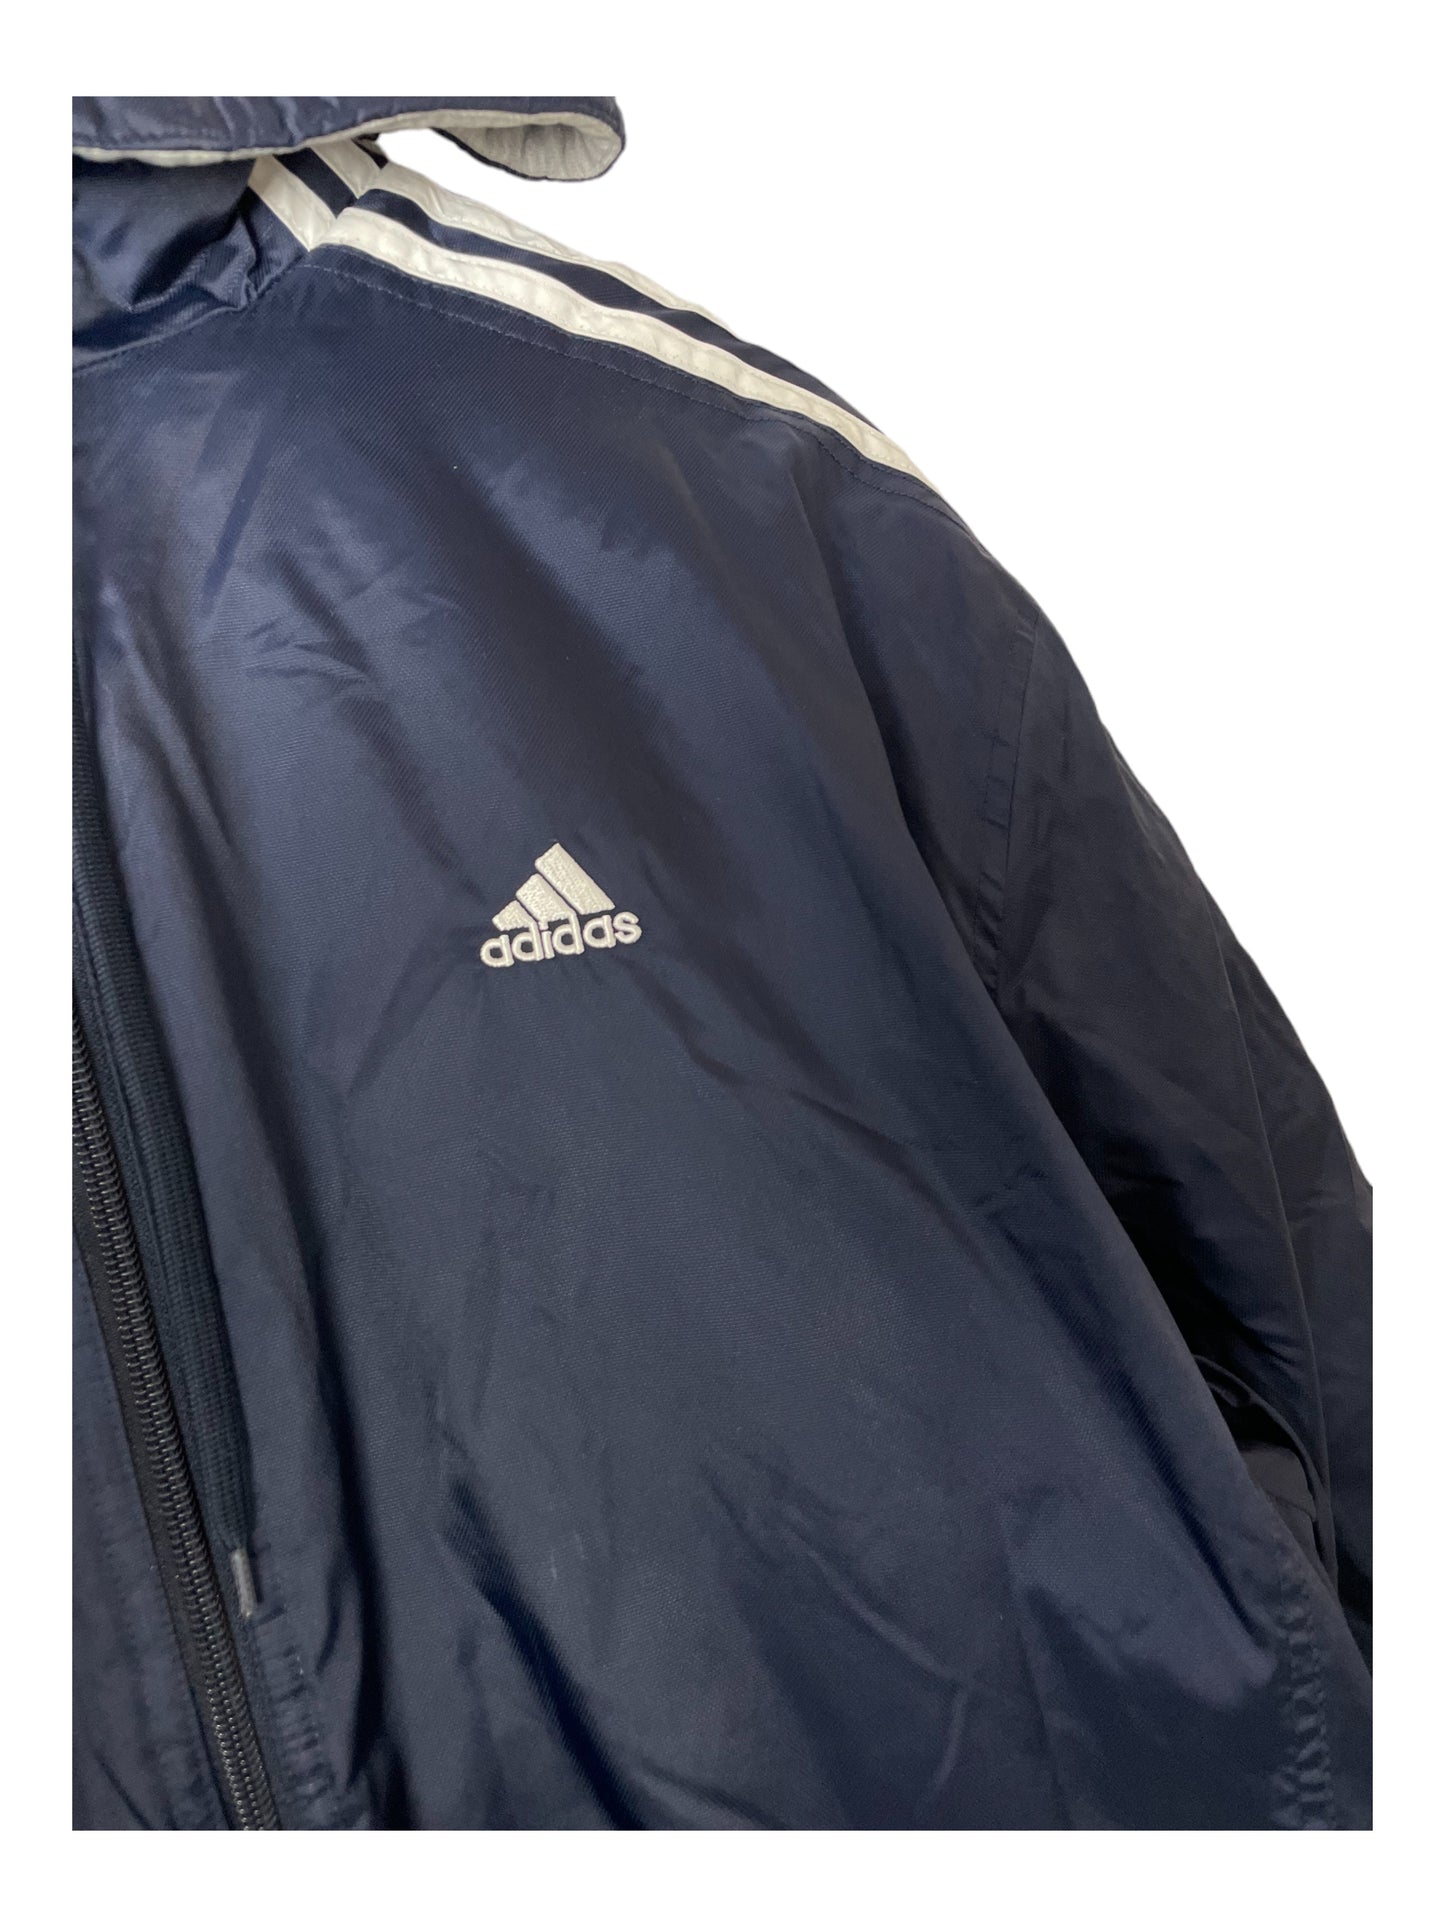 Adidas Riversible Jacket